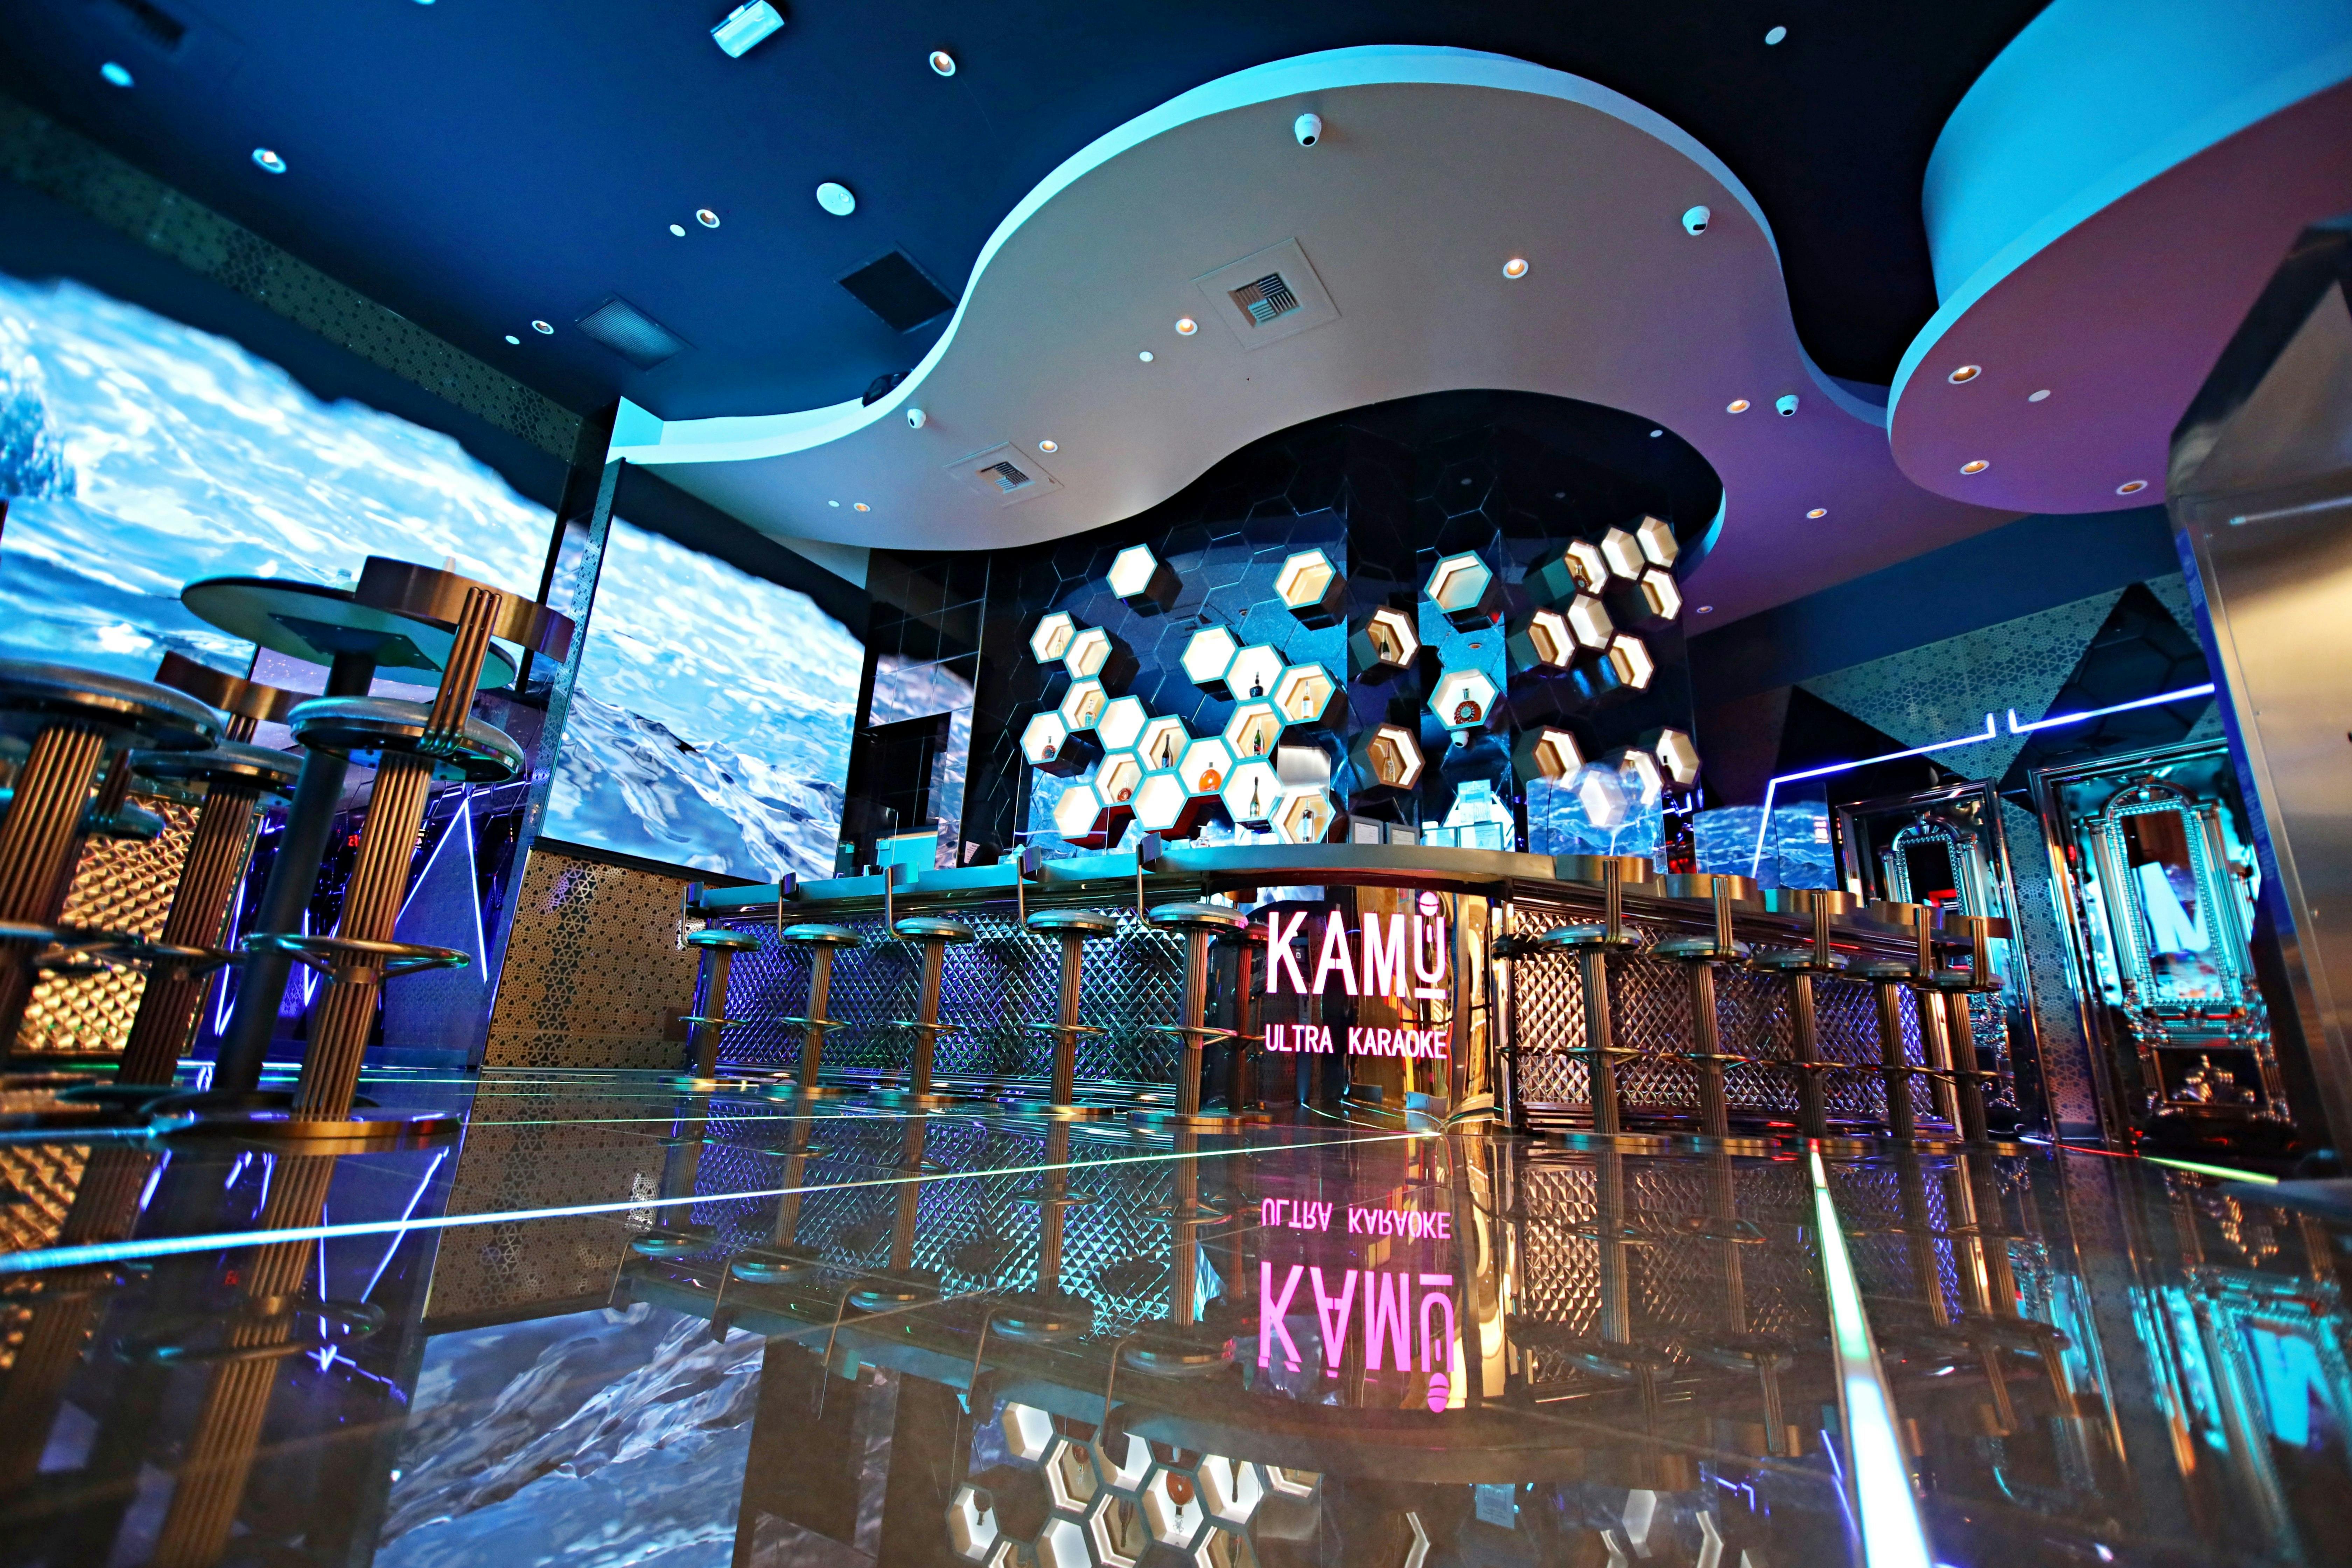 Tickets to KAMU Ultra Karaoke in Las Vegas